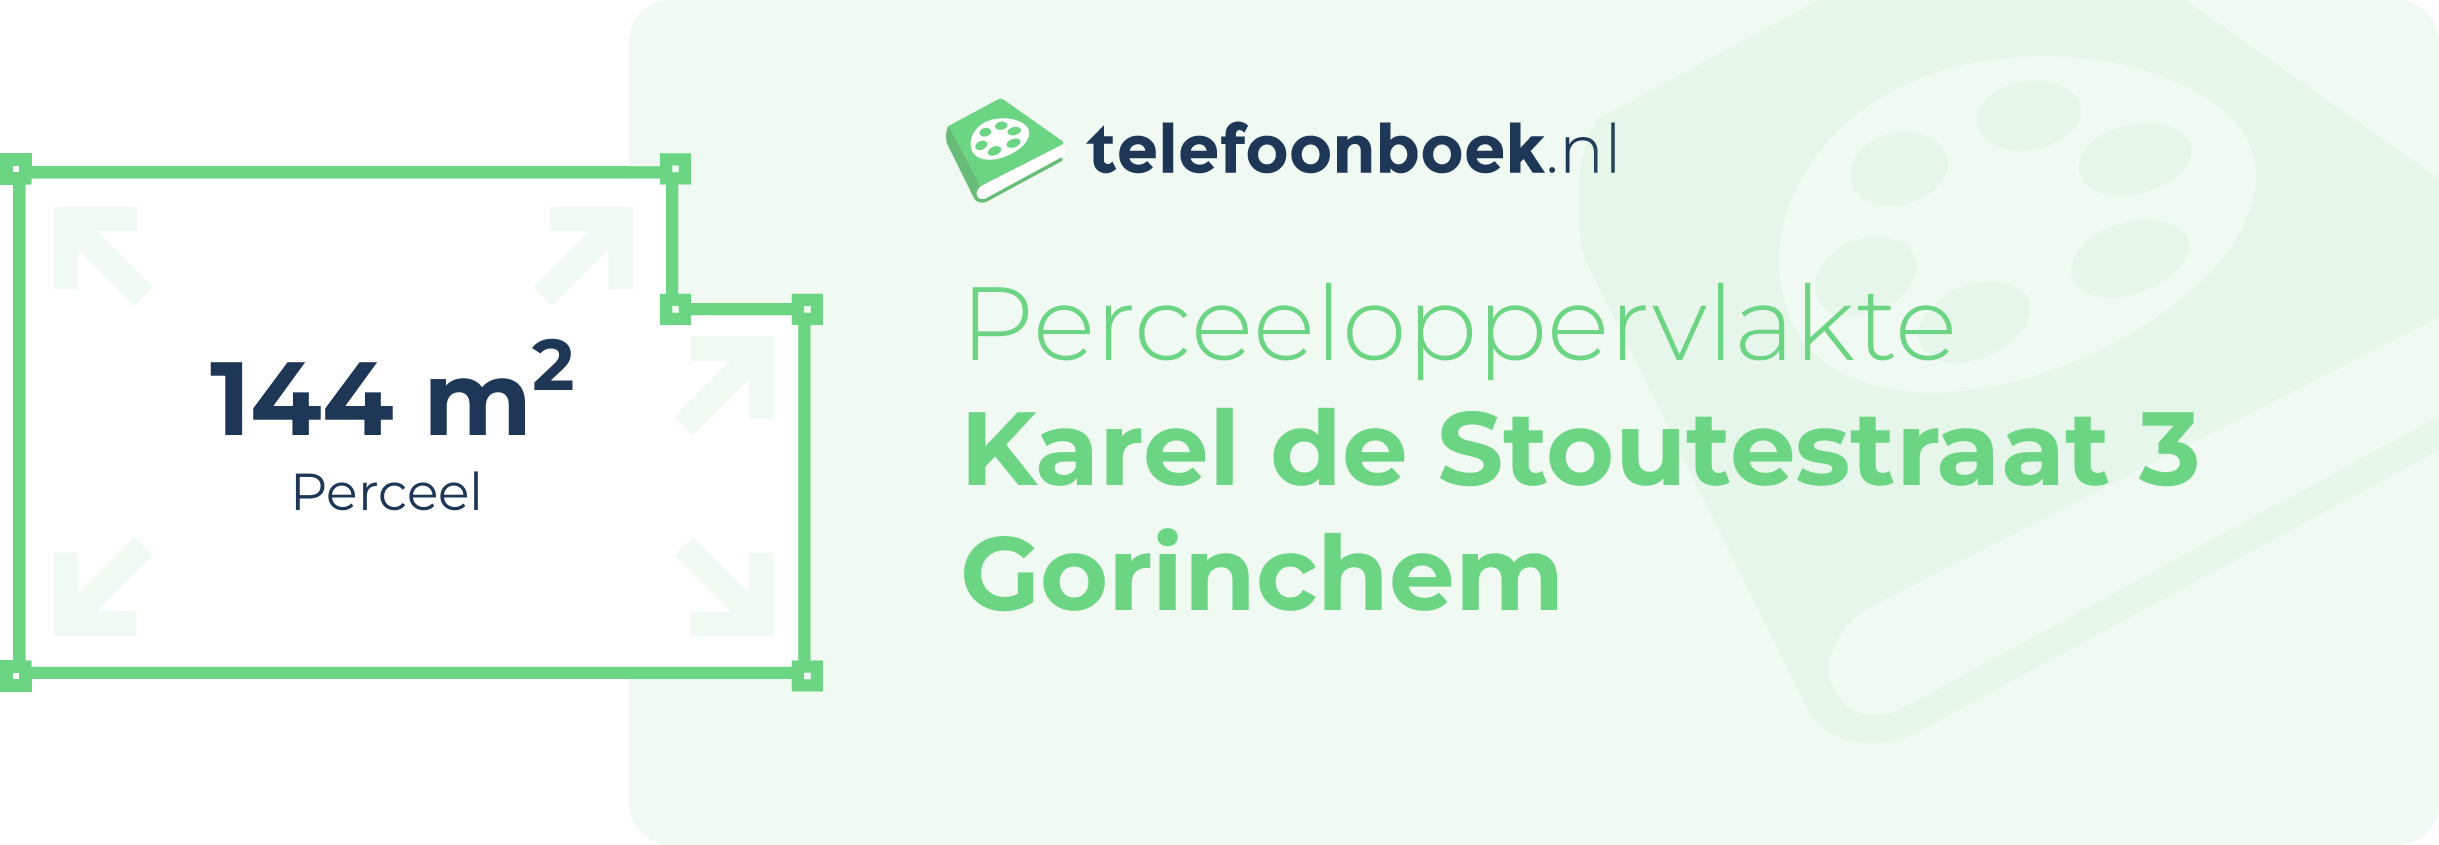 Perceeloppervlakte Karel De Stoutestraat 3 Gorinchem